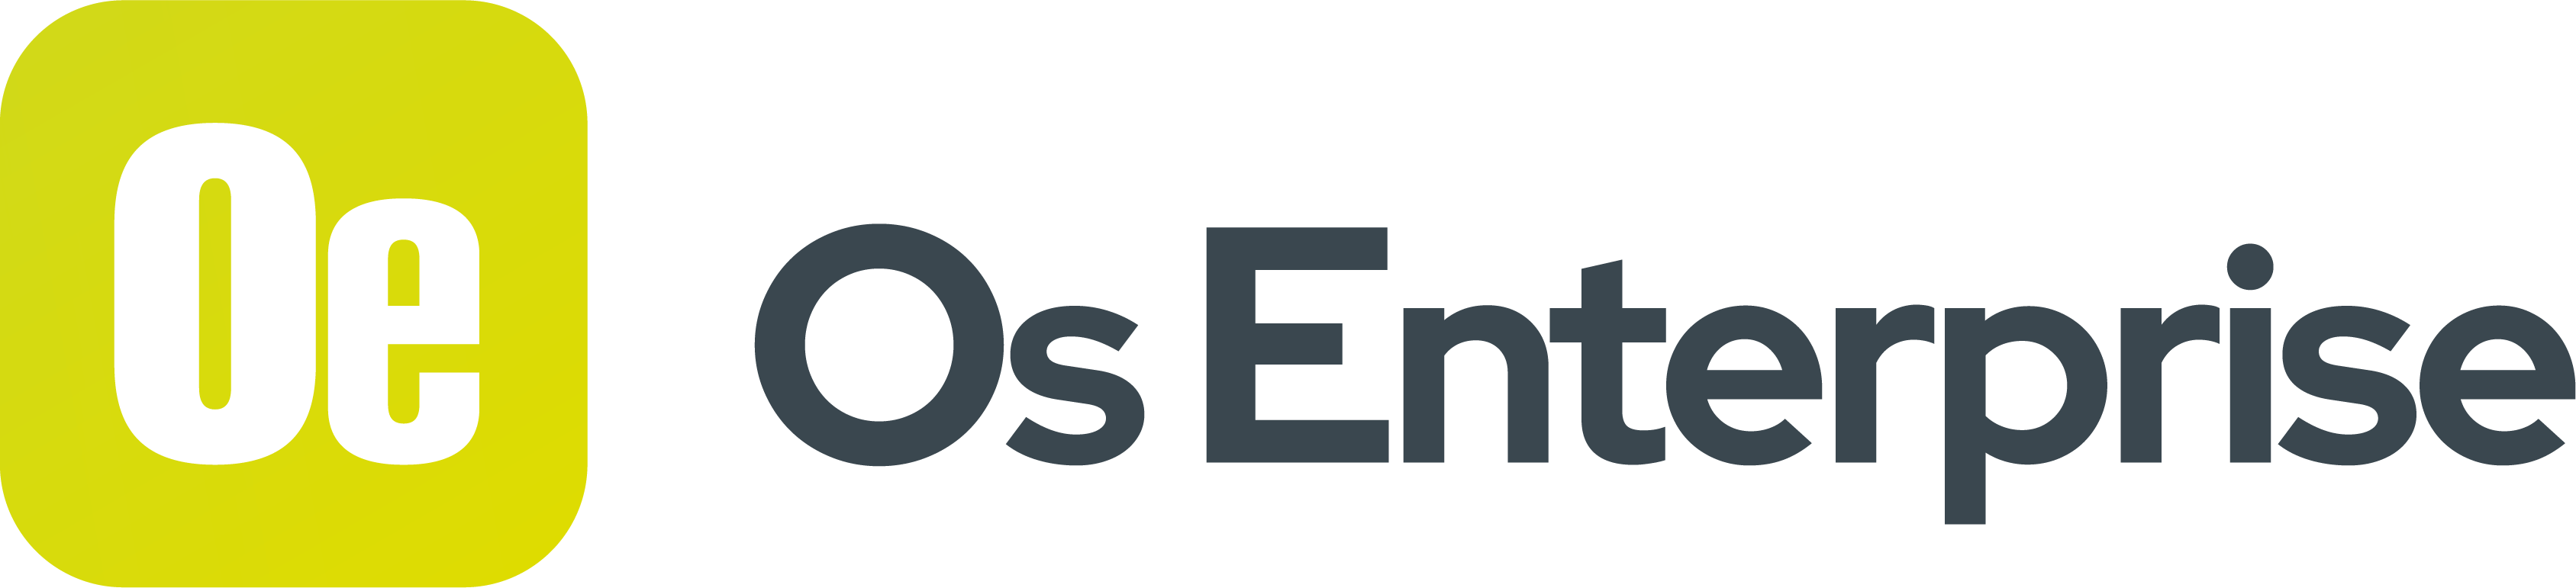 Os Enterprise logo